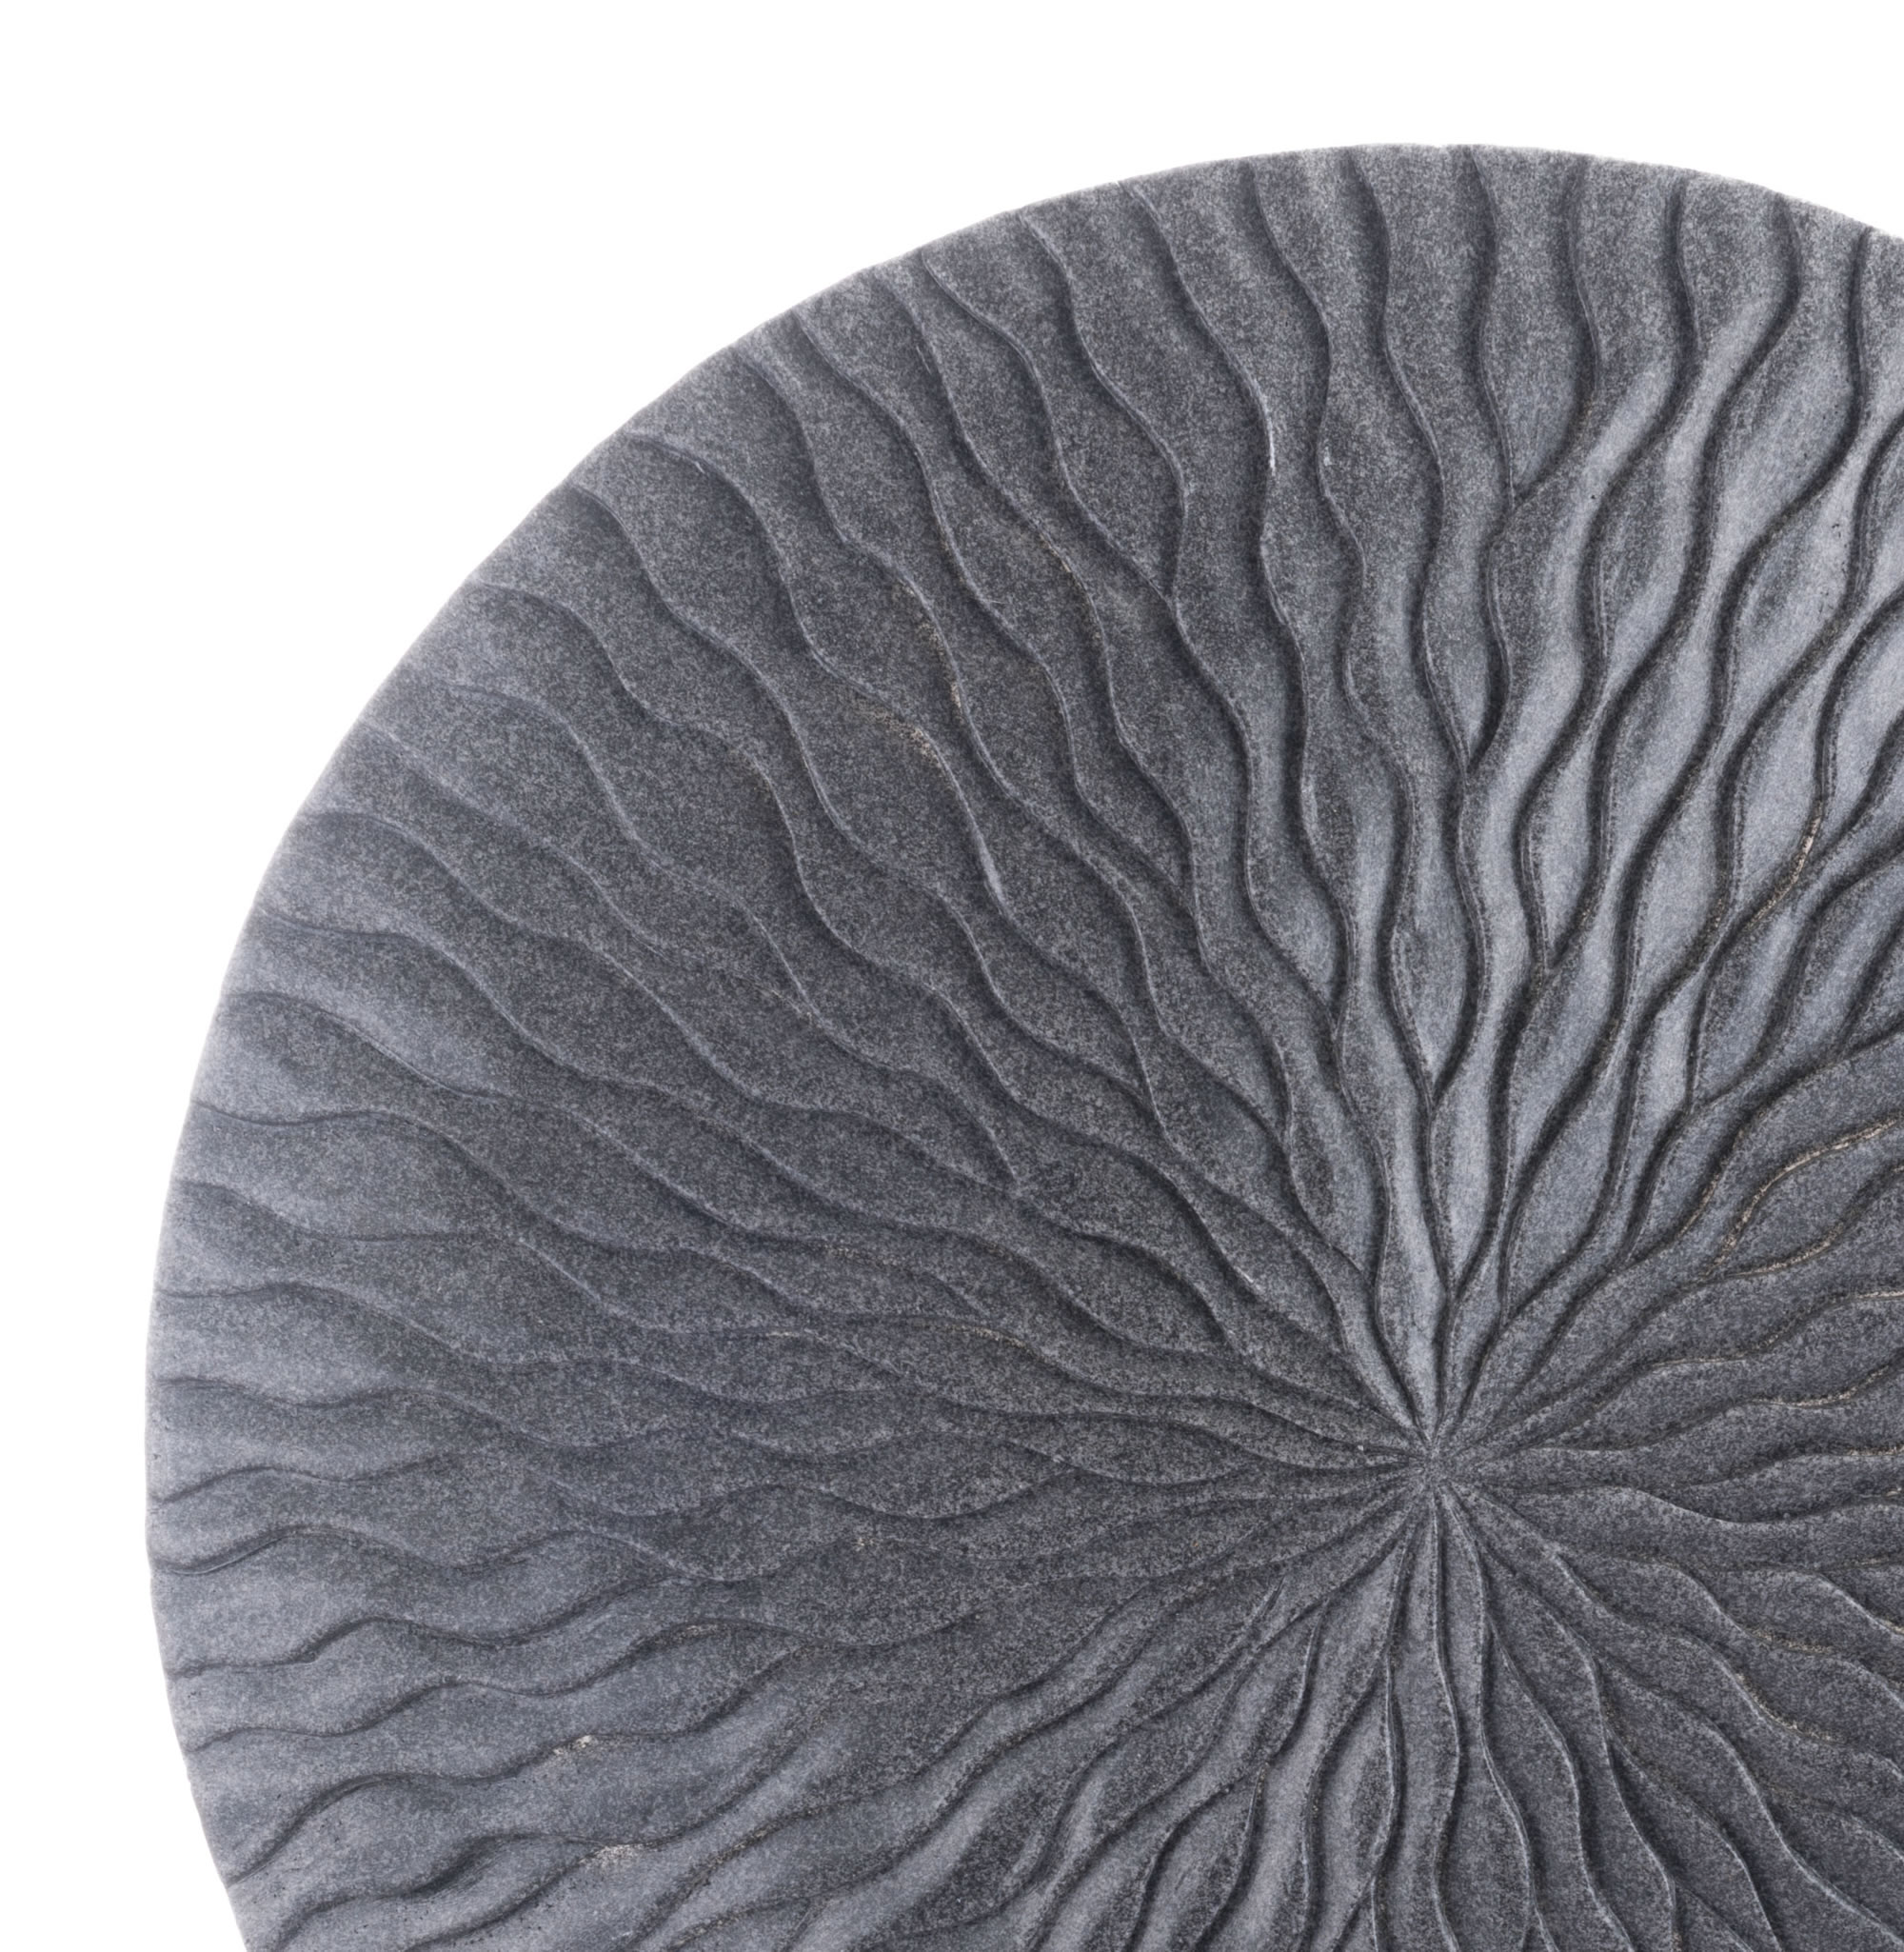 23.3" x 23.3" x 2.8" Dark Gray, Sandstone, Round Wave Large Plaque